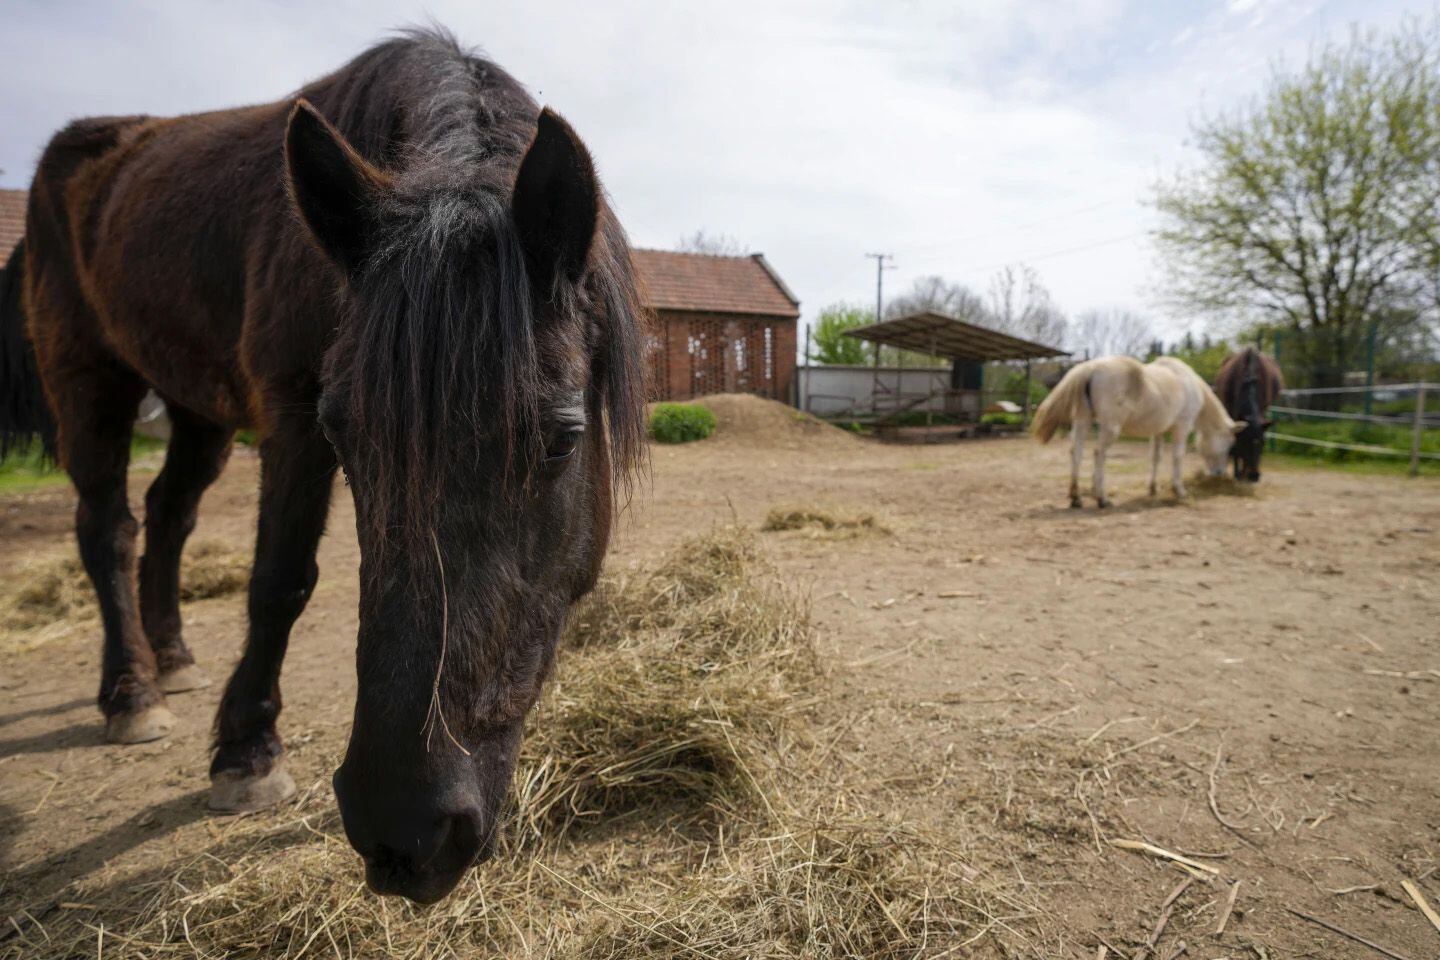 Durante casi una década, el santuario ha sido el hogar de más de una docena de equinos .(AP Photo/Darko Vojinovic) Santuarios animales, caballos, equinos, cerdos, burros, animales, mascotas, noticias de animales, noticias de mascotas, Serbia, Lapovo